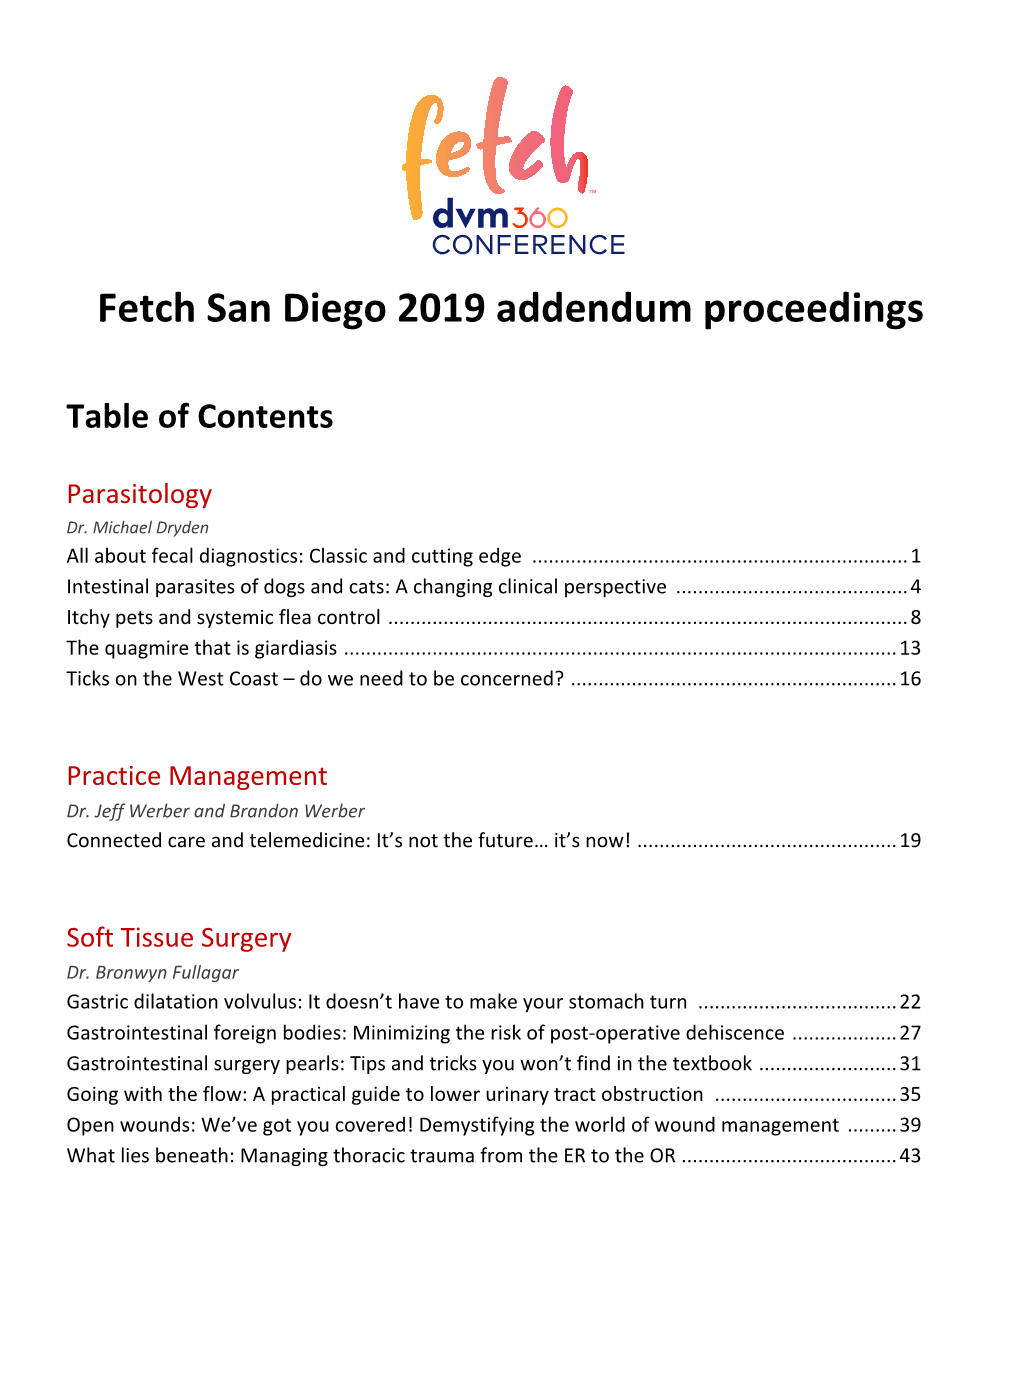 Fetch San Diego 2019 Addendum Proceedings